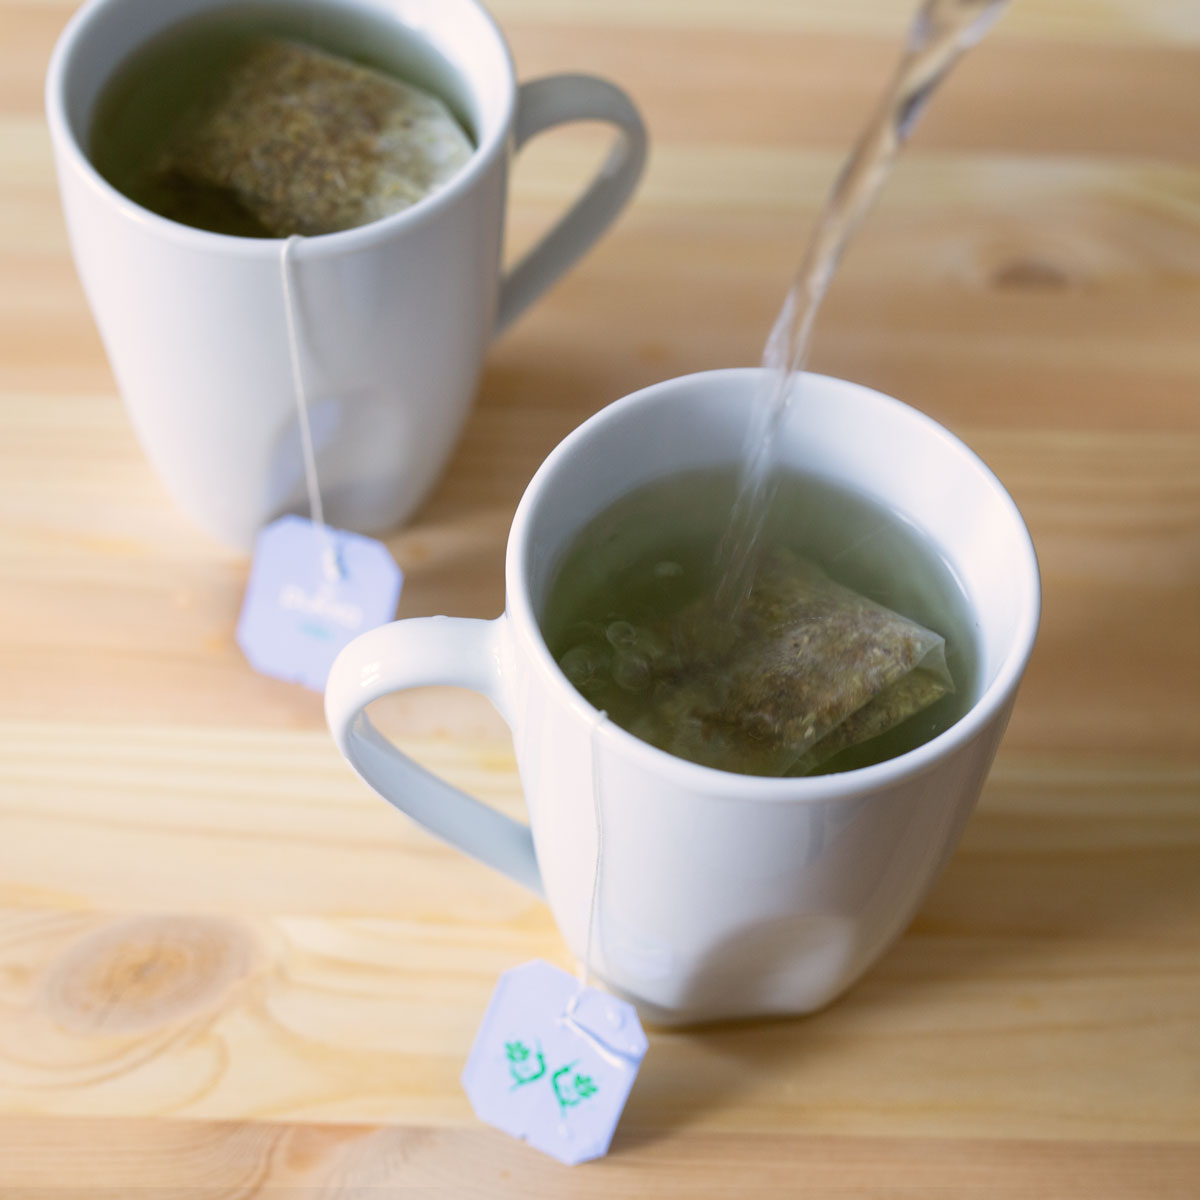 Bật mí loại trà uống trước khi đi ngủ để giảm cân hiệu quả